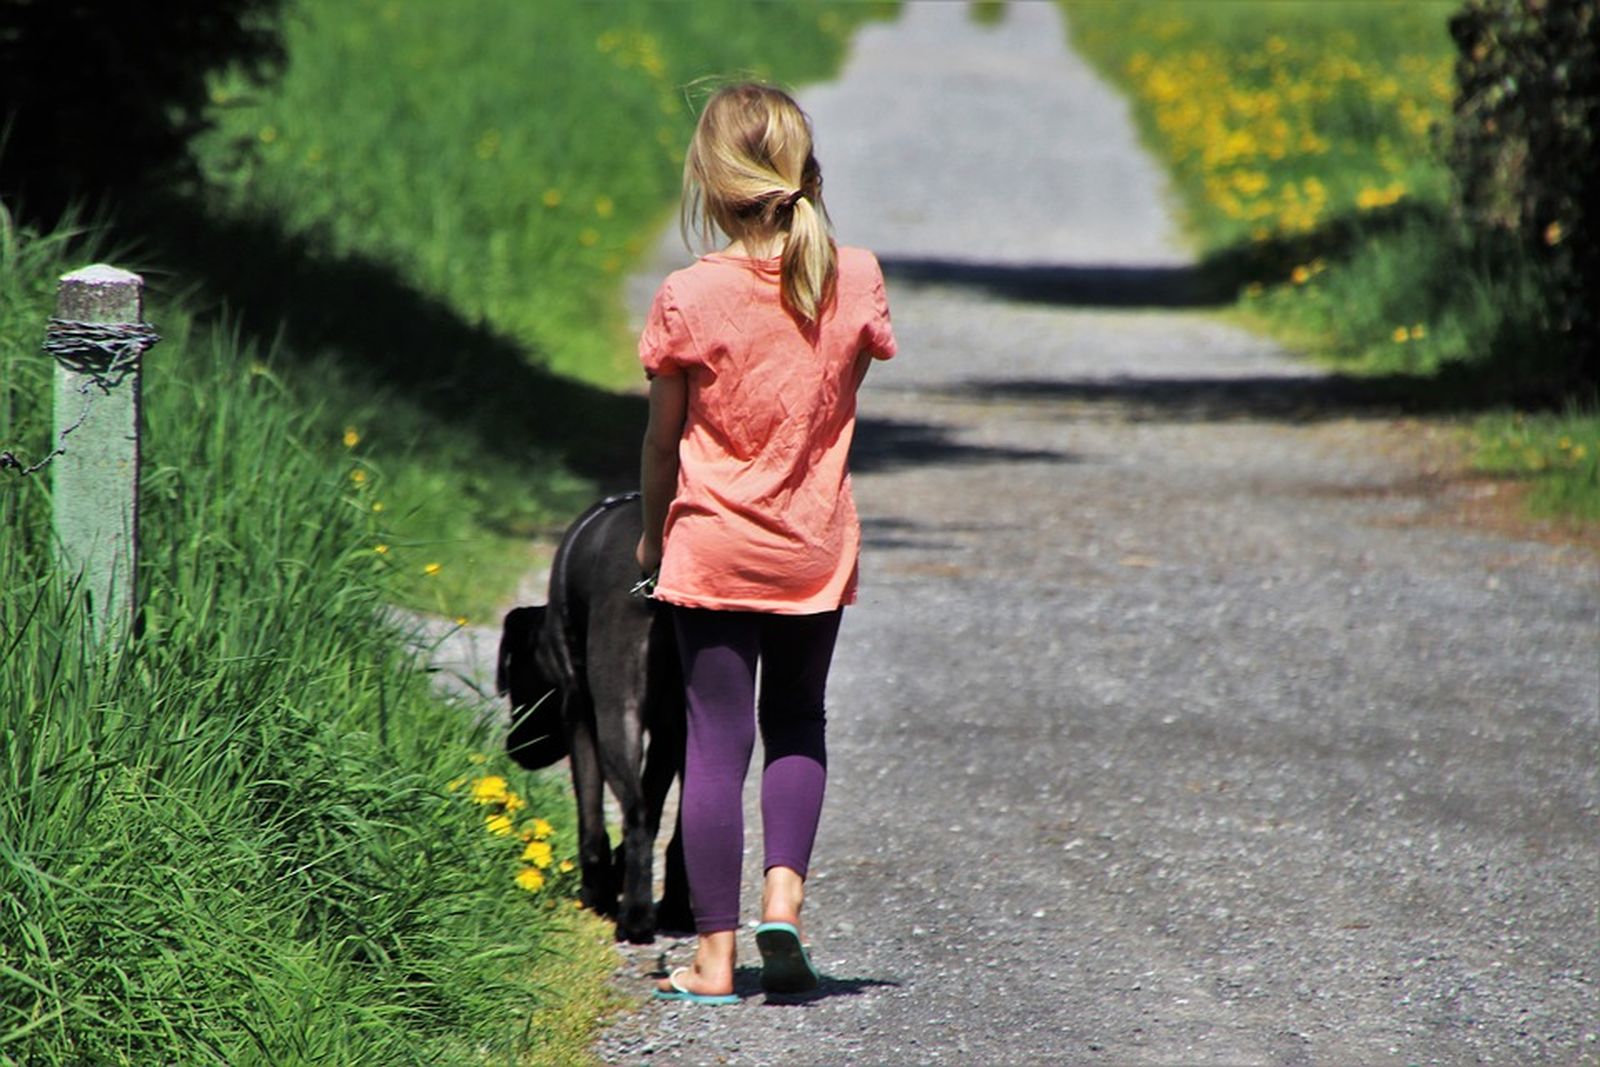 Ein Mädchen mit orangenem Shirt und blauter Leggings geht mit einem schwarzen Hund an der Leine an einem asphaltierten Feldweg spazieren